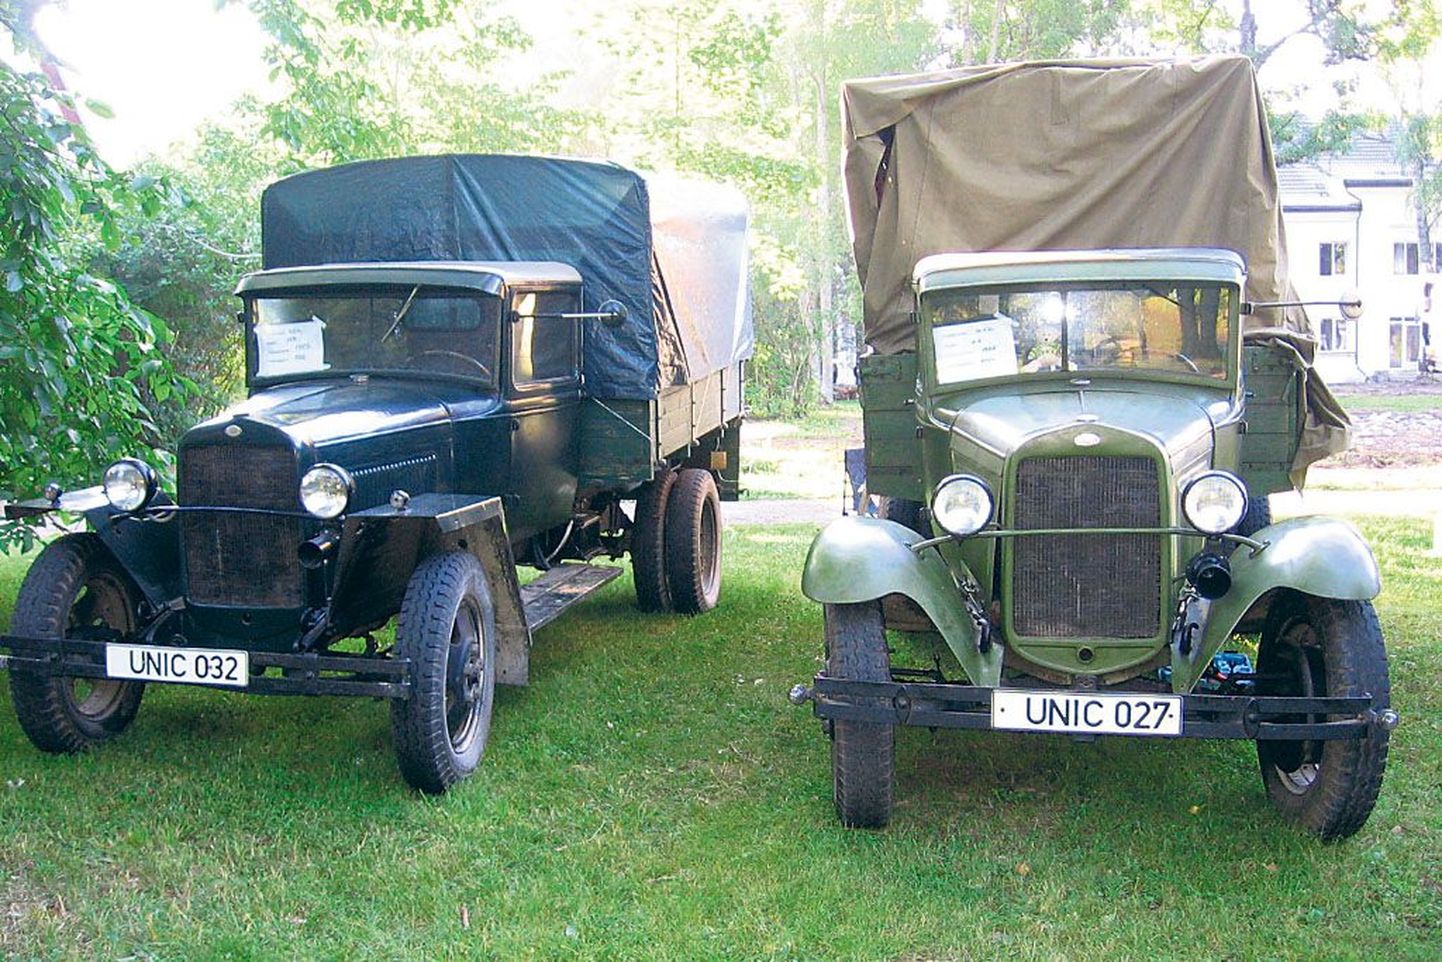 Kaks Nõukogude Venes 1930. aastatel tootma hakatud masinat: GAZ-MM (vasemal) ja GAZ-AA. Mõlemat näeb laupäeval Pärnus.